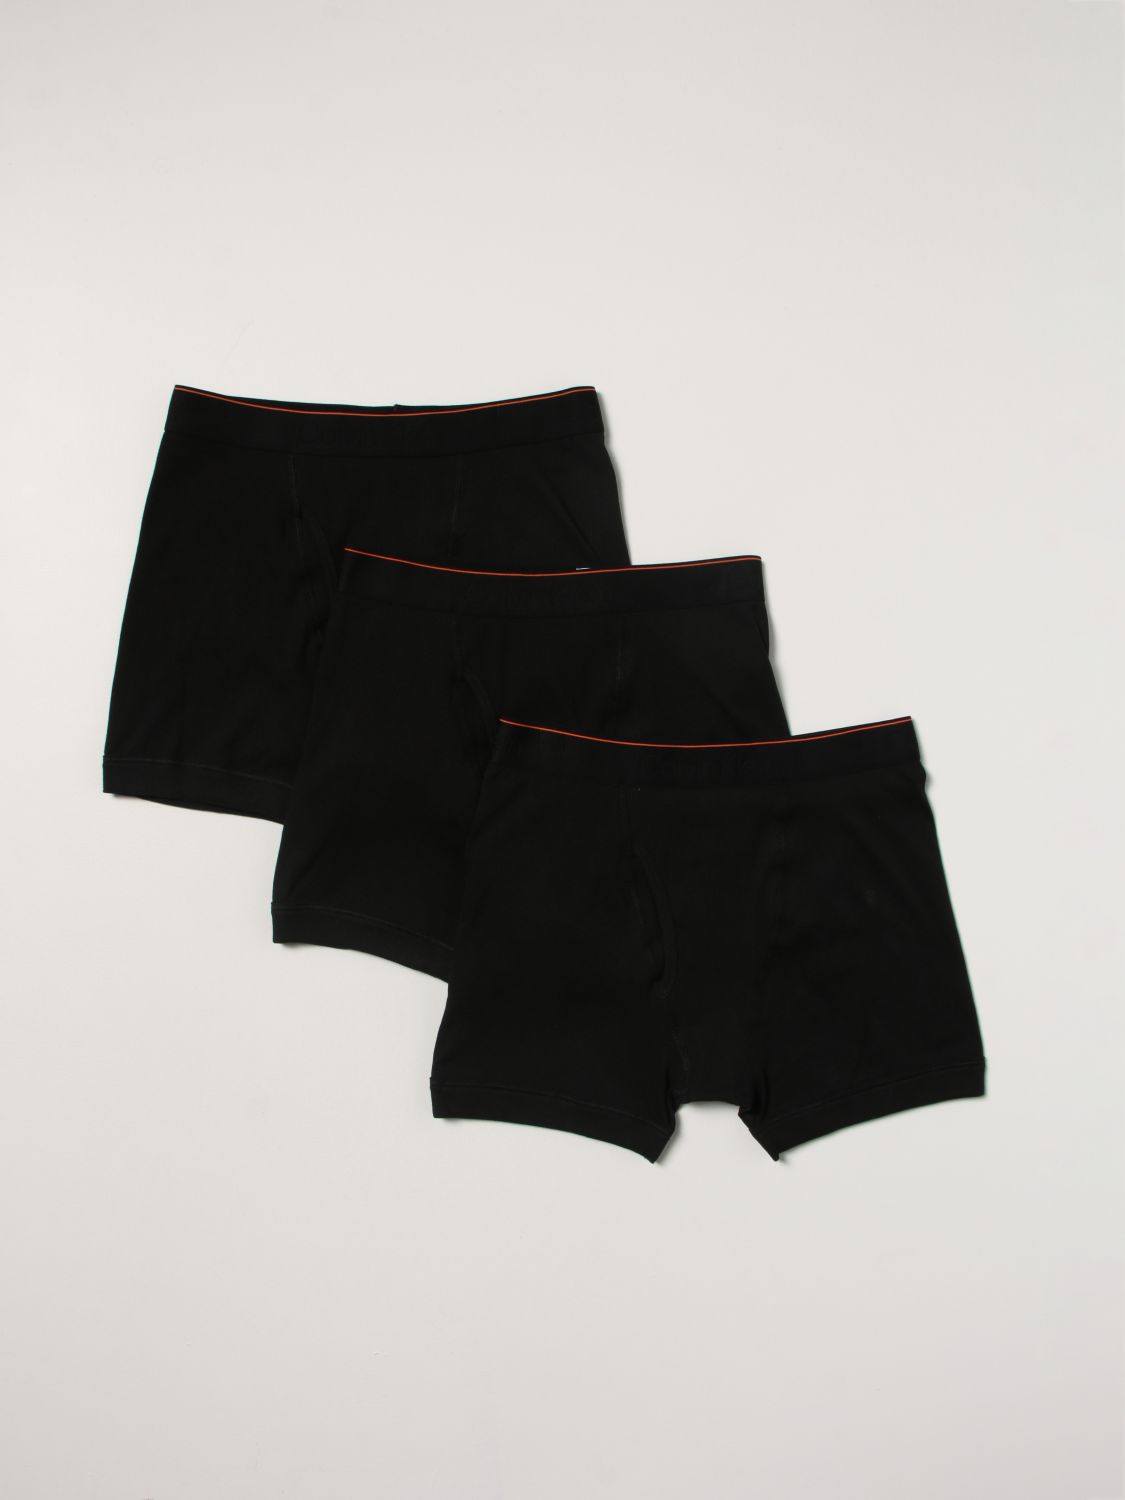 Underwear Heron Preston For Calvin Klein: Set 3 boxers Orange 2.0 Heron Preston x Calvin Klein with logo black 1